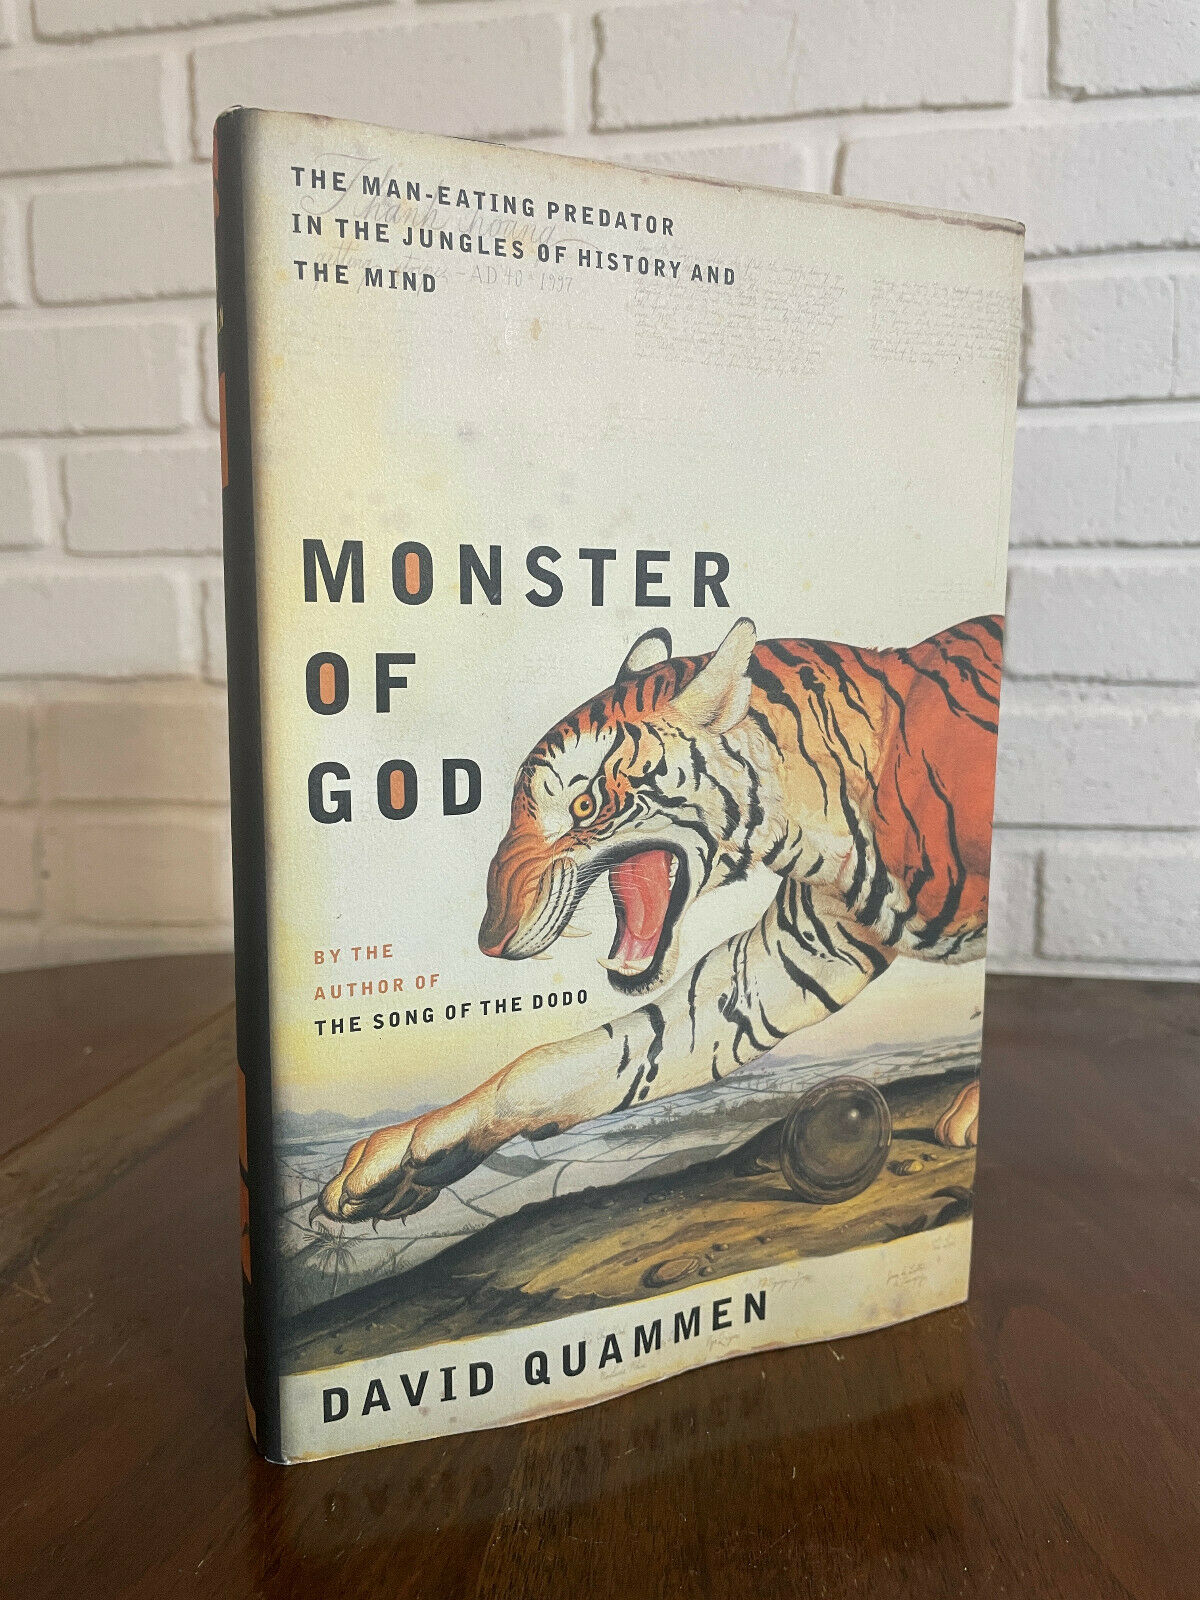 Monster of God : the Man-Eating Predator in the Jungle David Quammen 2003 (I4)